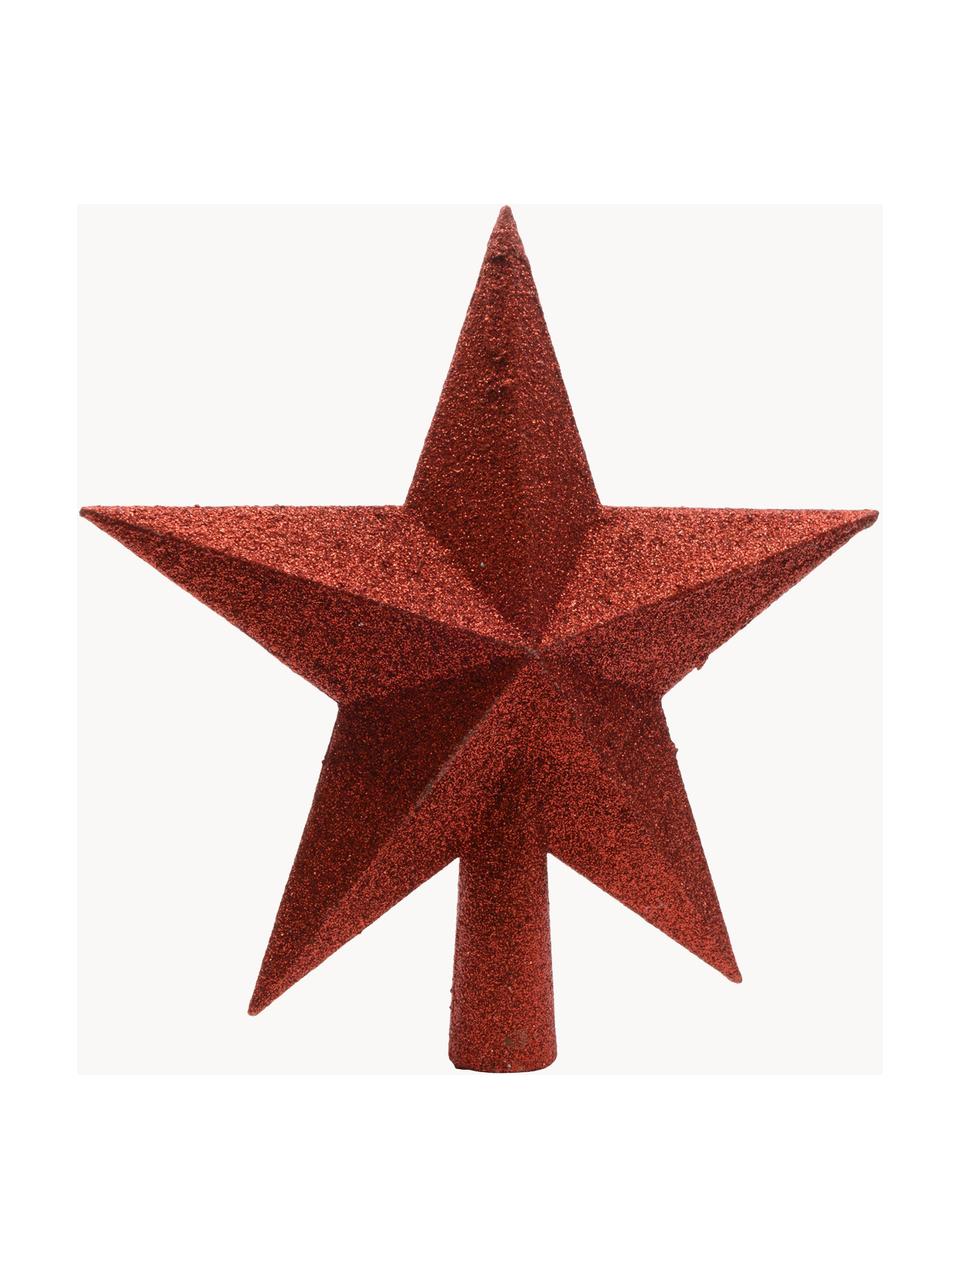 Špic na vianočný stromček Morning Star, V 19 cm, Umelá hmota, trblietky, Vianočná červená, Ø 19 cm